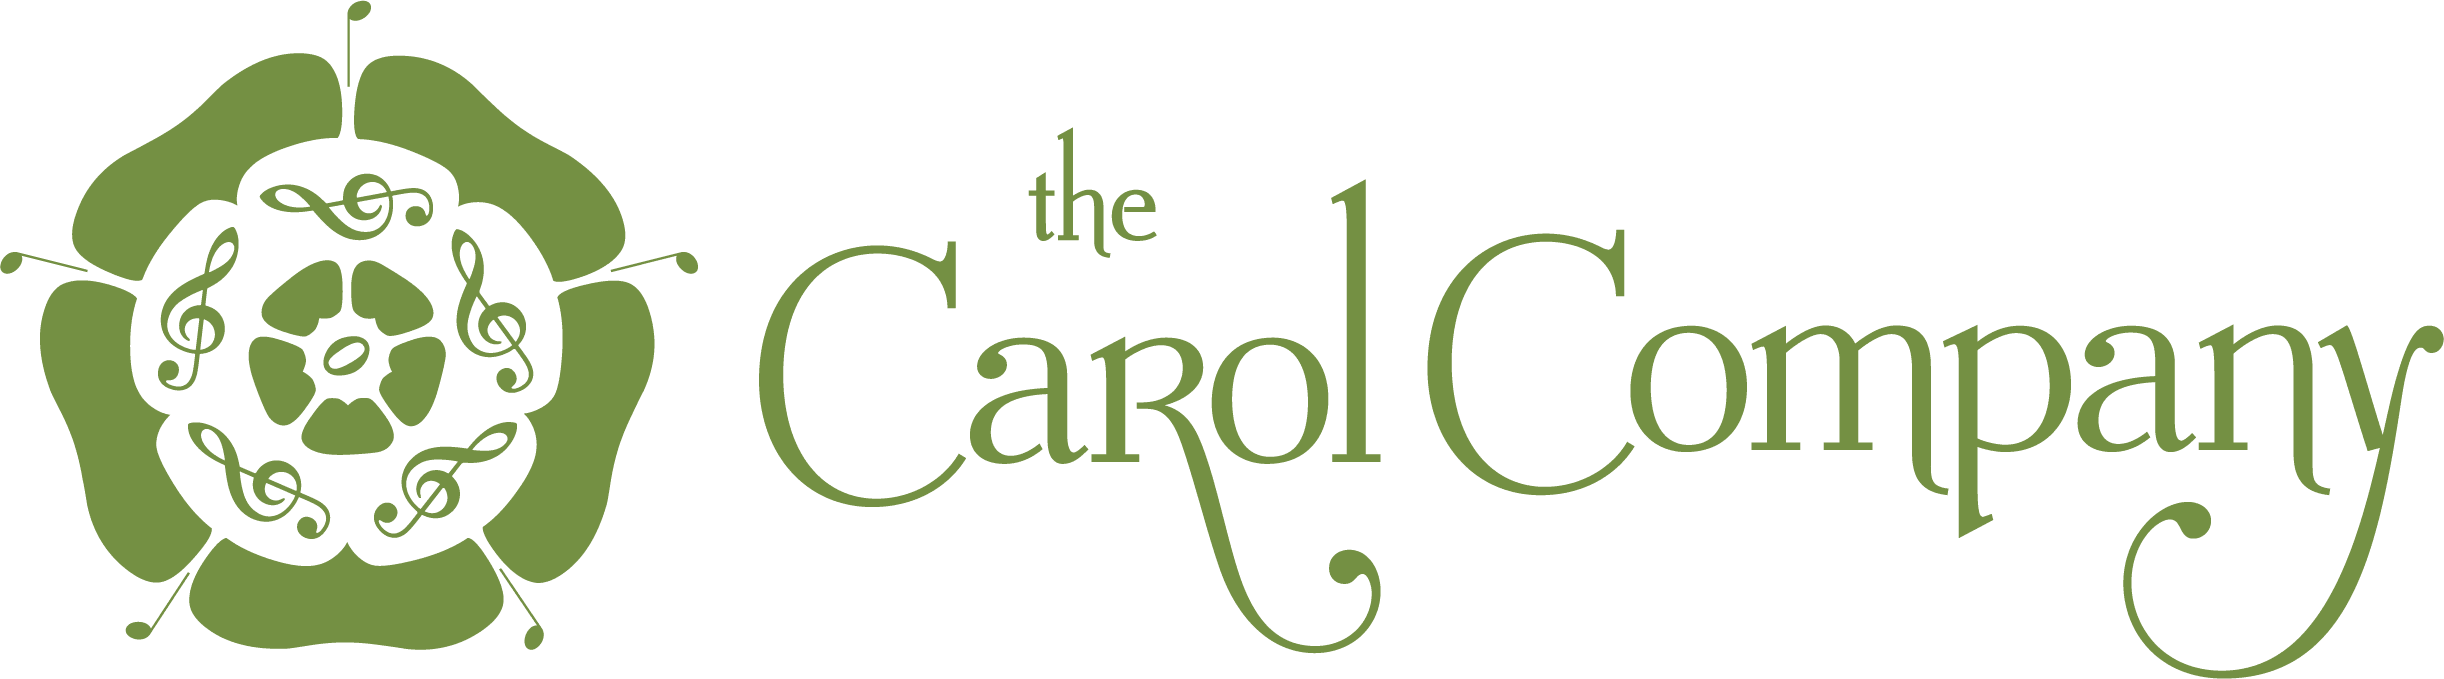 The Carol Company